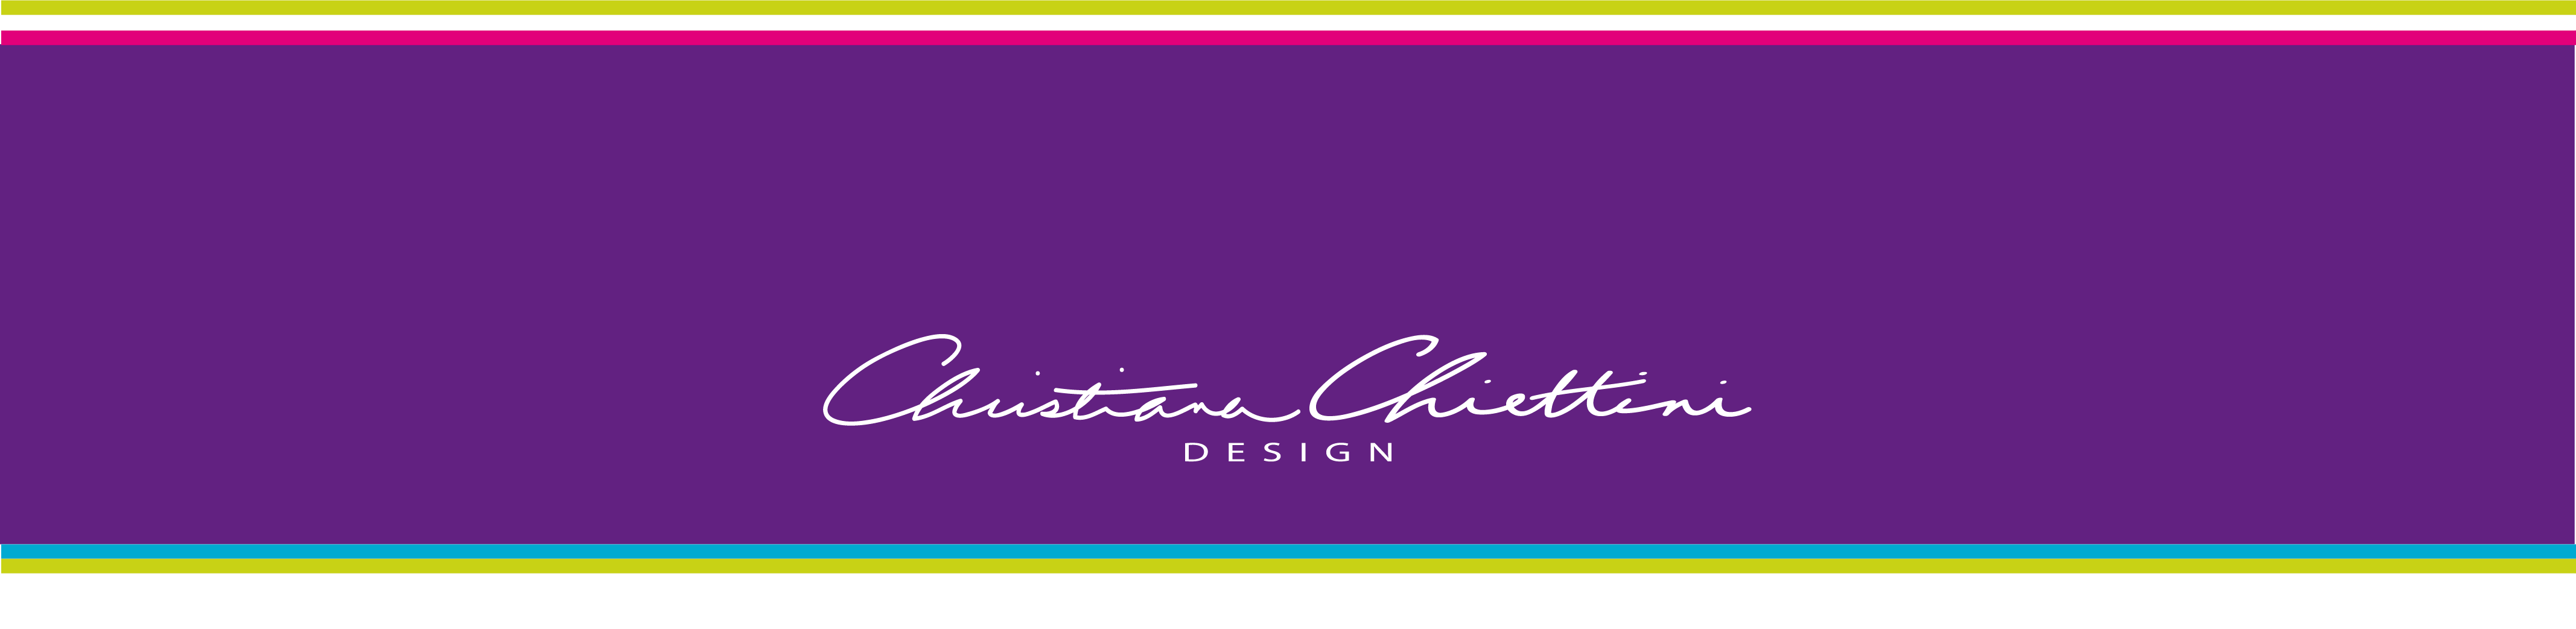 Christiana Chiettini Design